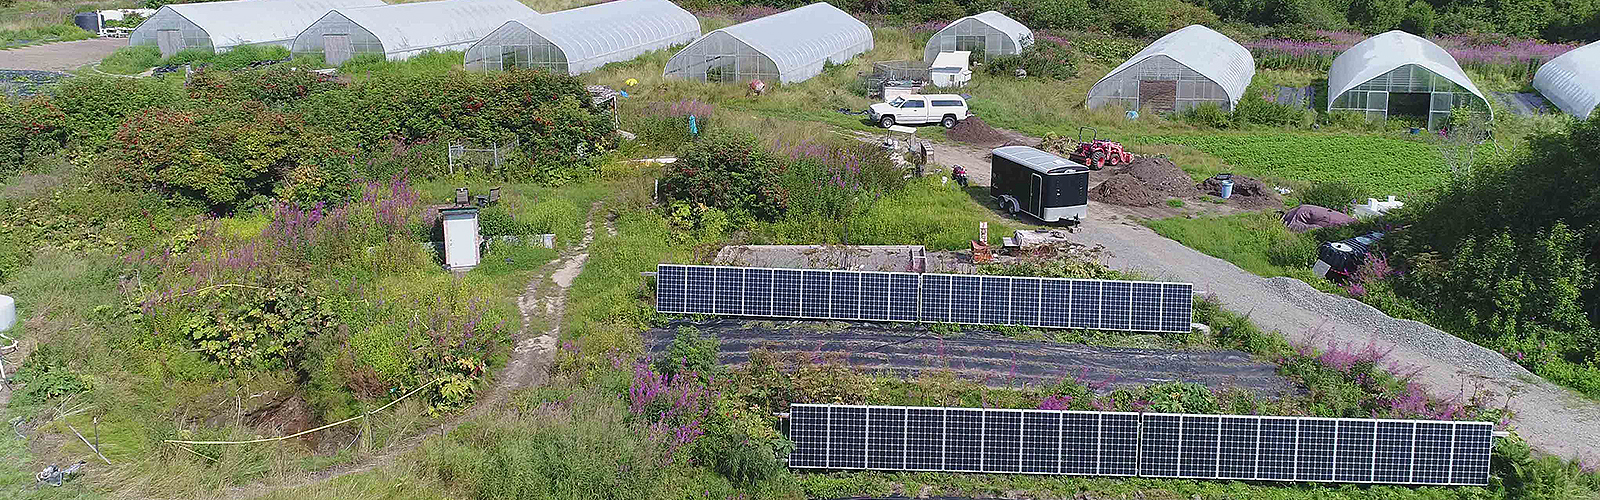 Solar power in Homer Alaska